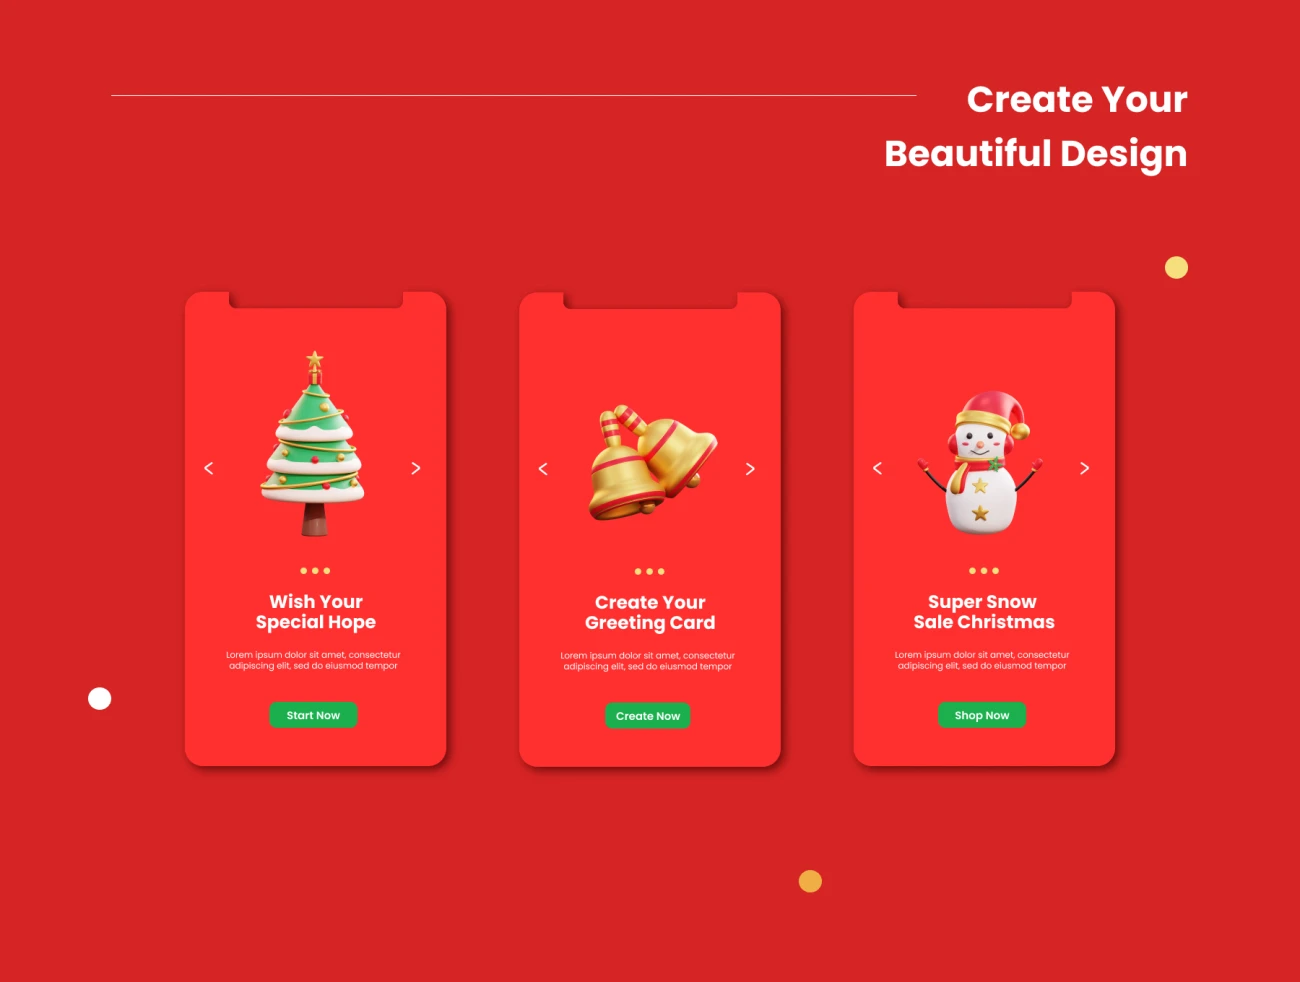 20款3D矢量圣诞节插画图标素材下载 Christmas – 3D Icon Premium Pack .blender .psd .figma插图7